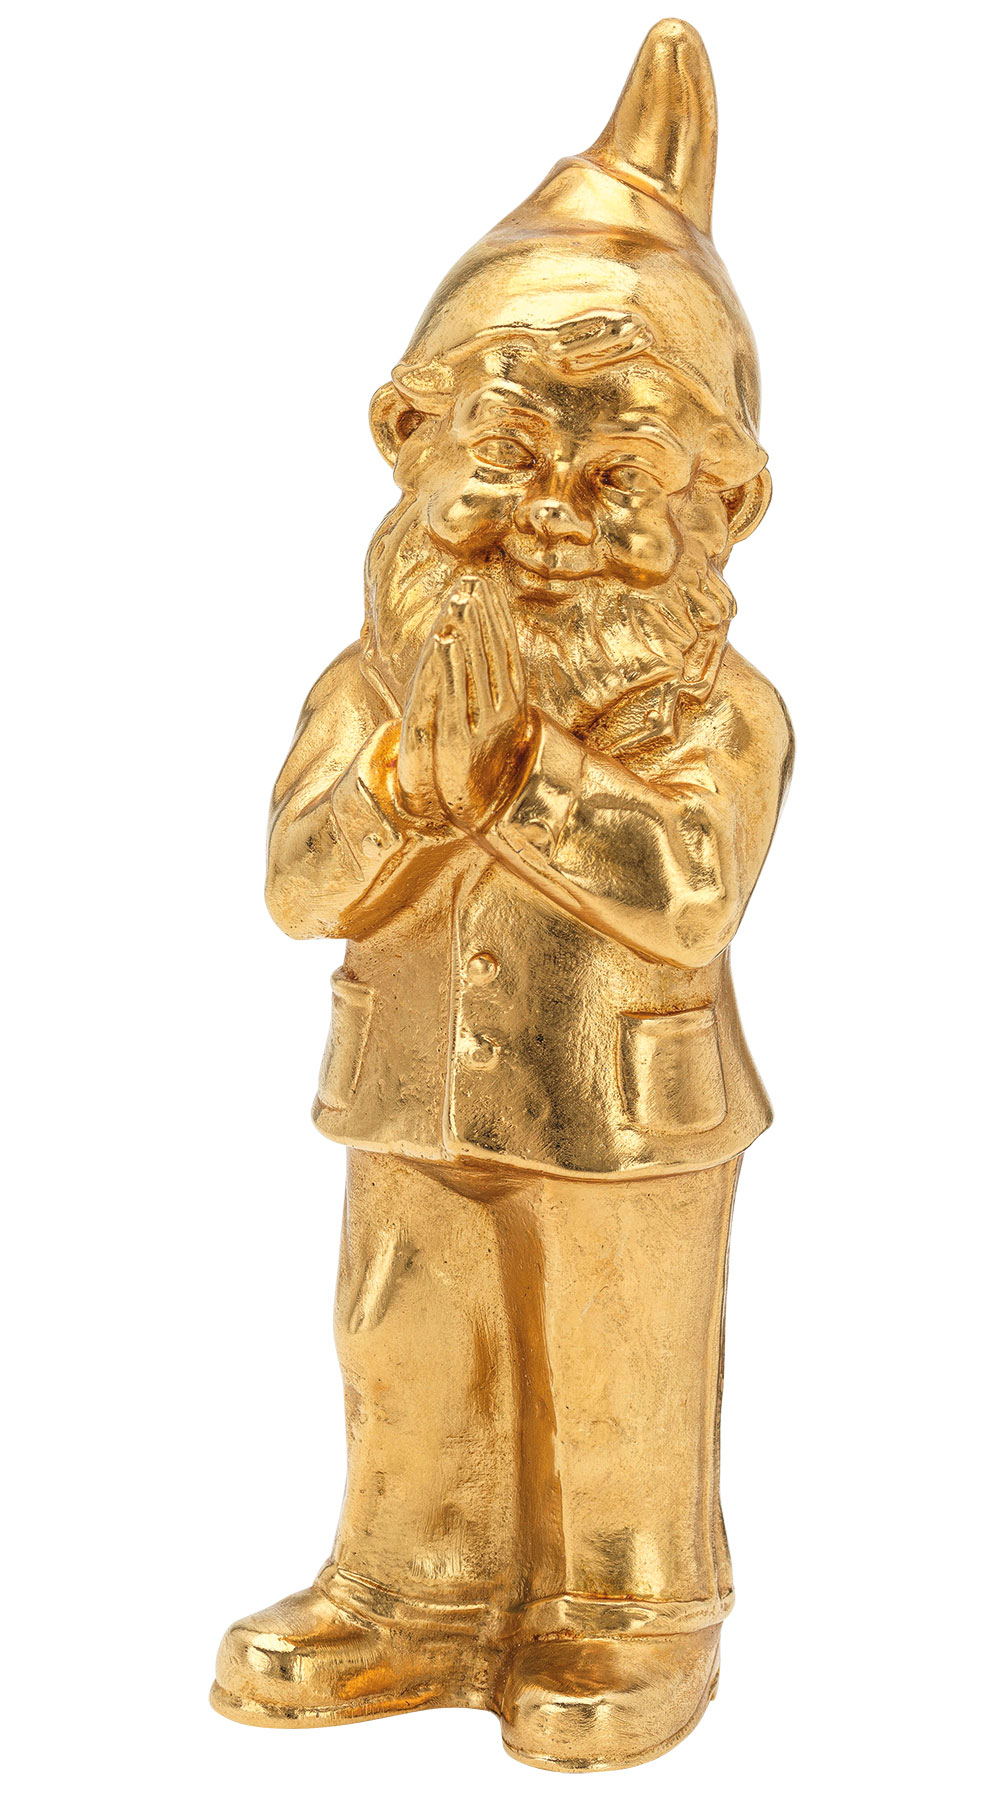 Sculpture "Ben", gold-plated version by Ottmar Hörl